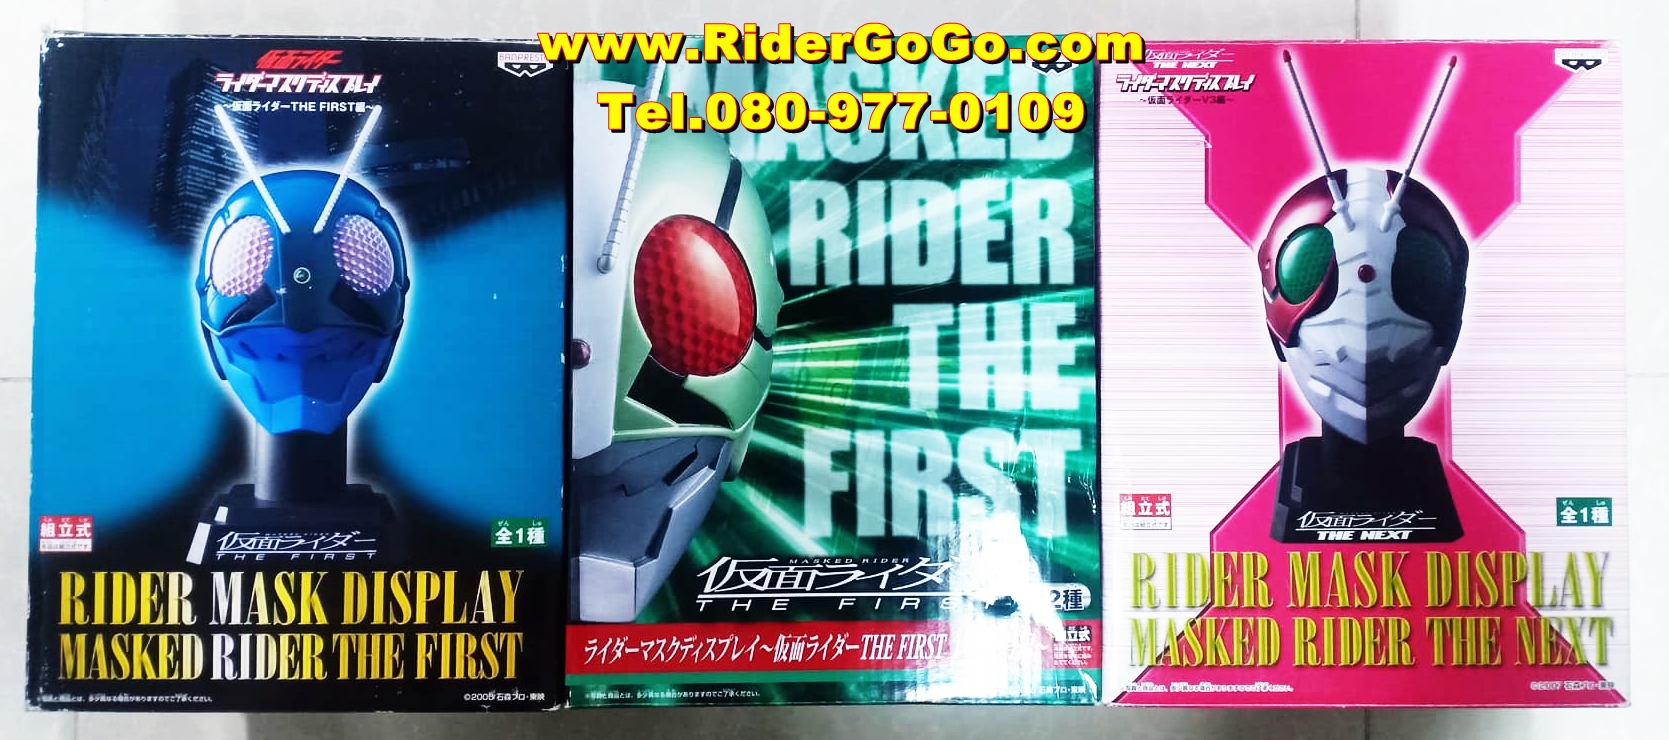 หัวมาสค์ไรเดอร์เดอะเฟิร์ส เดอะเน็กซ์ The First The Next ขนาด 1/2 Banpresto Masked Rider The First The Next Mask Display ของใหม่ของแท้จากญี่ปุ่น รูปที่ 1